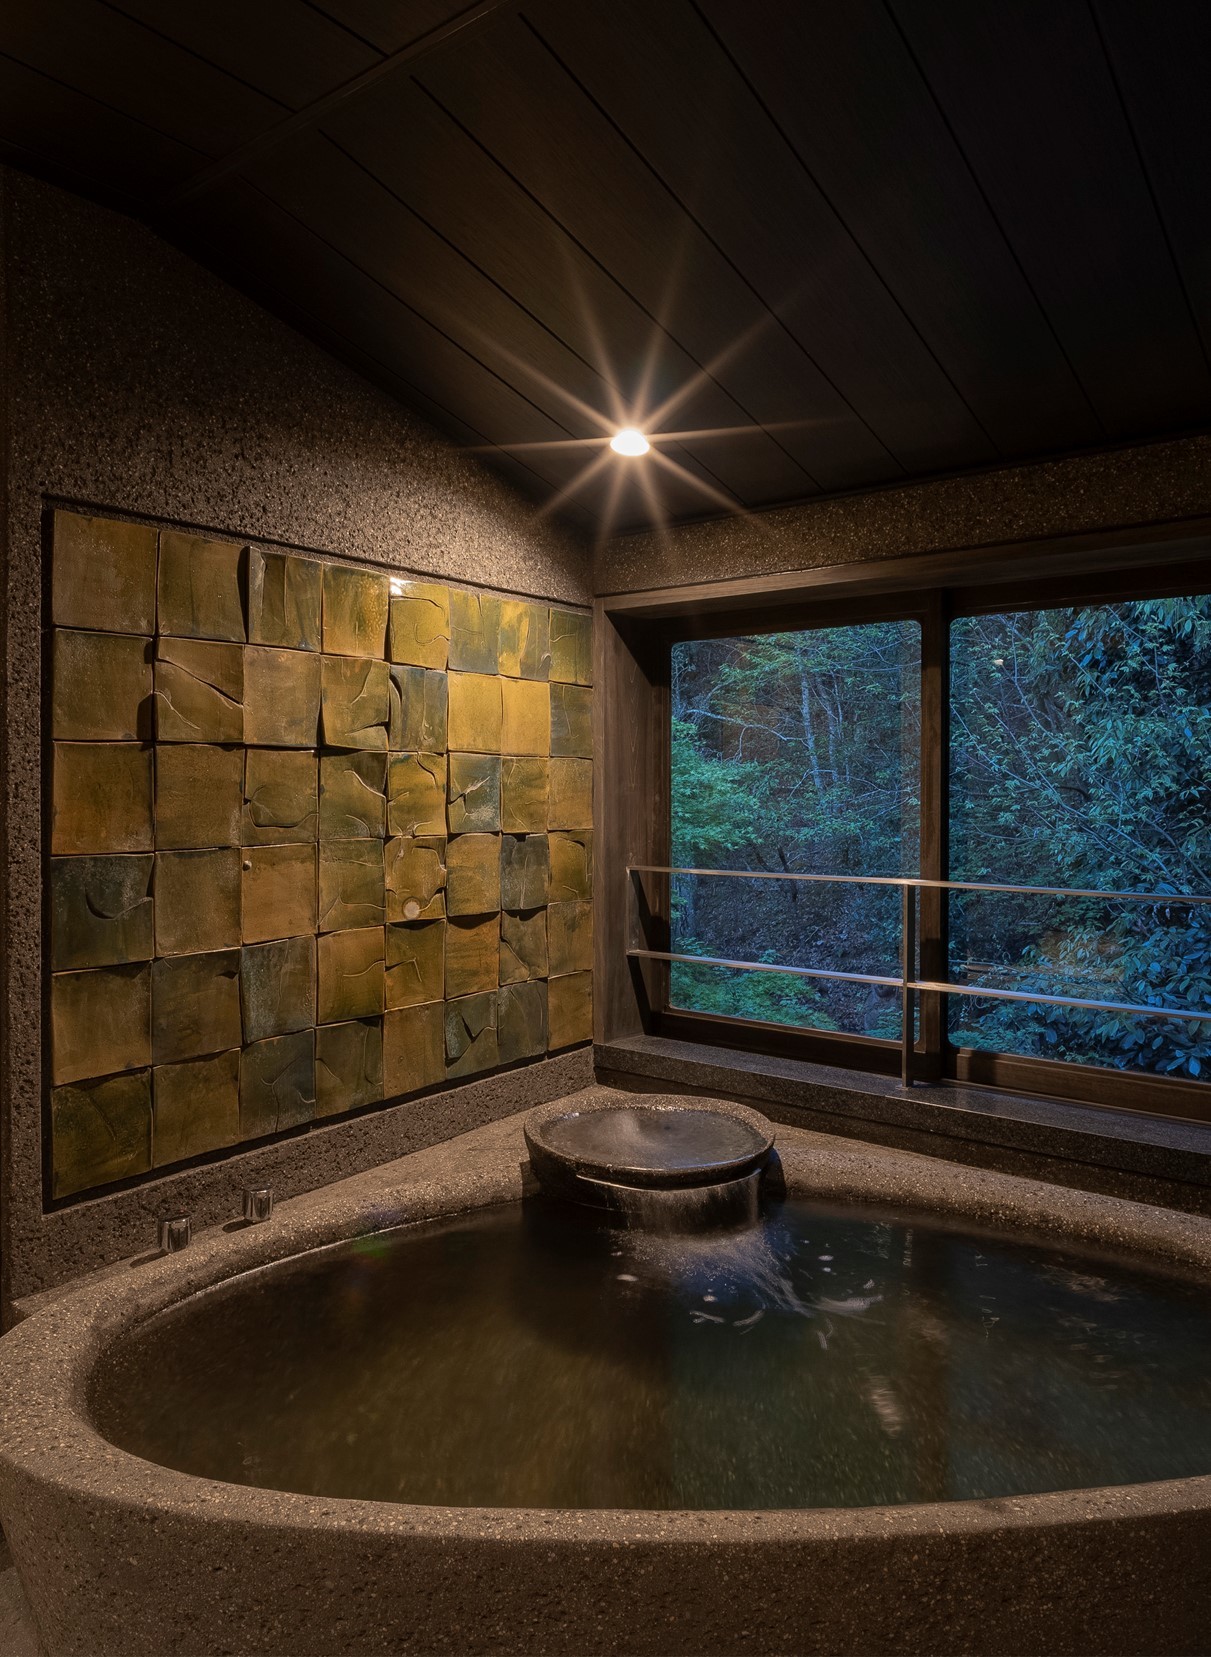 「現代アートの中に泊まれる」 客室が京都の温泉郷「湯の花温泉」に誕生3